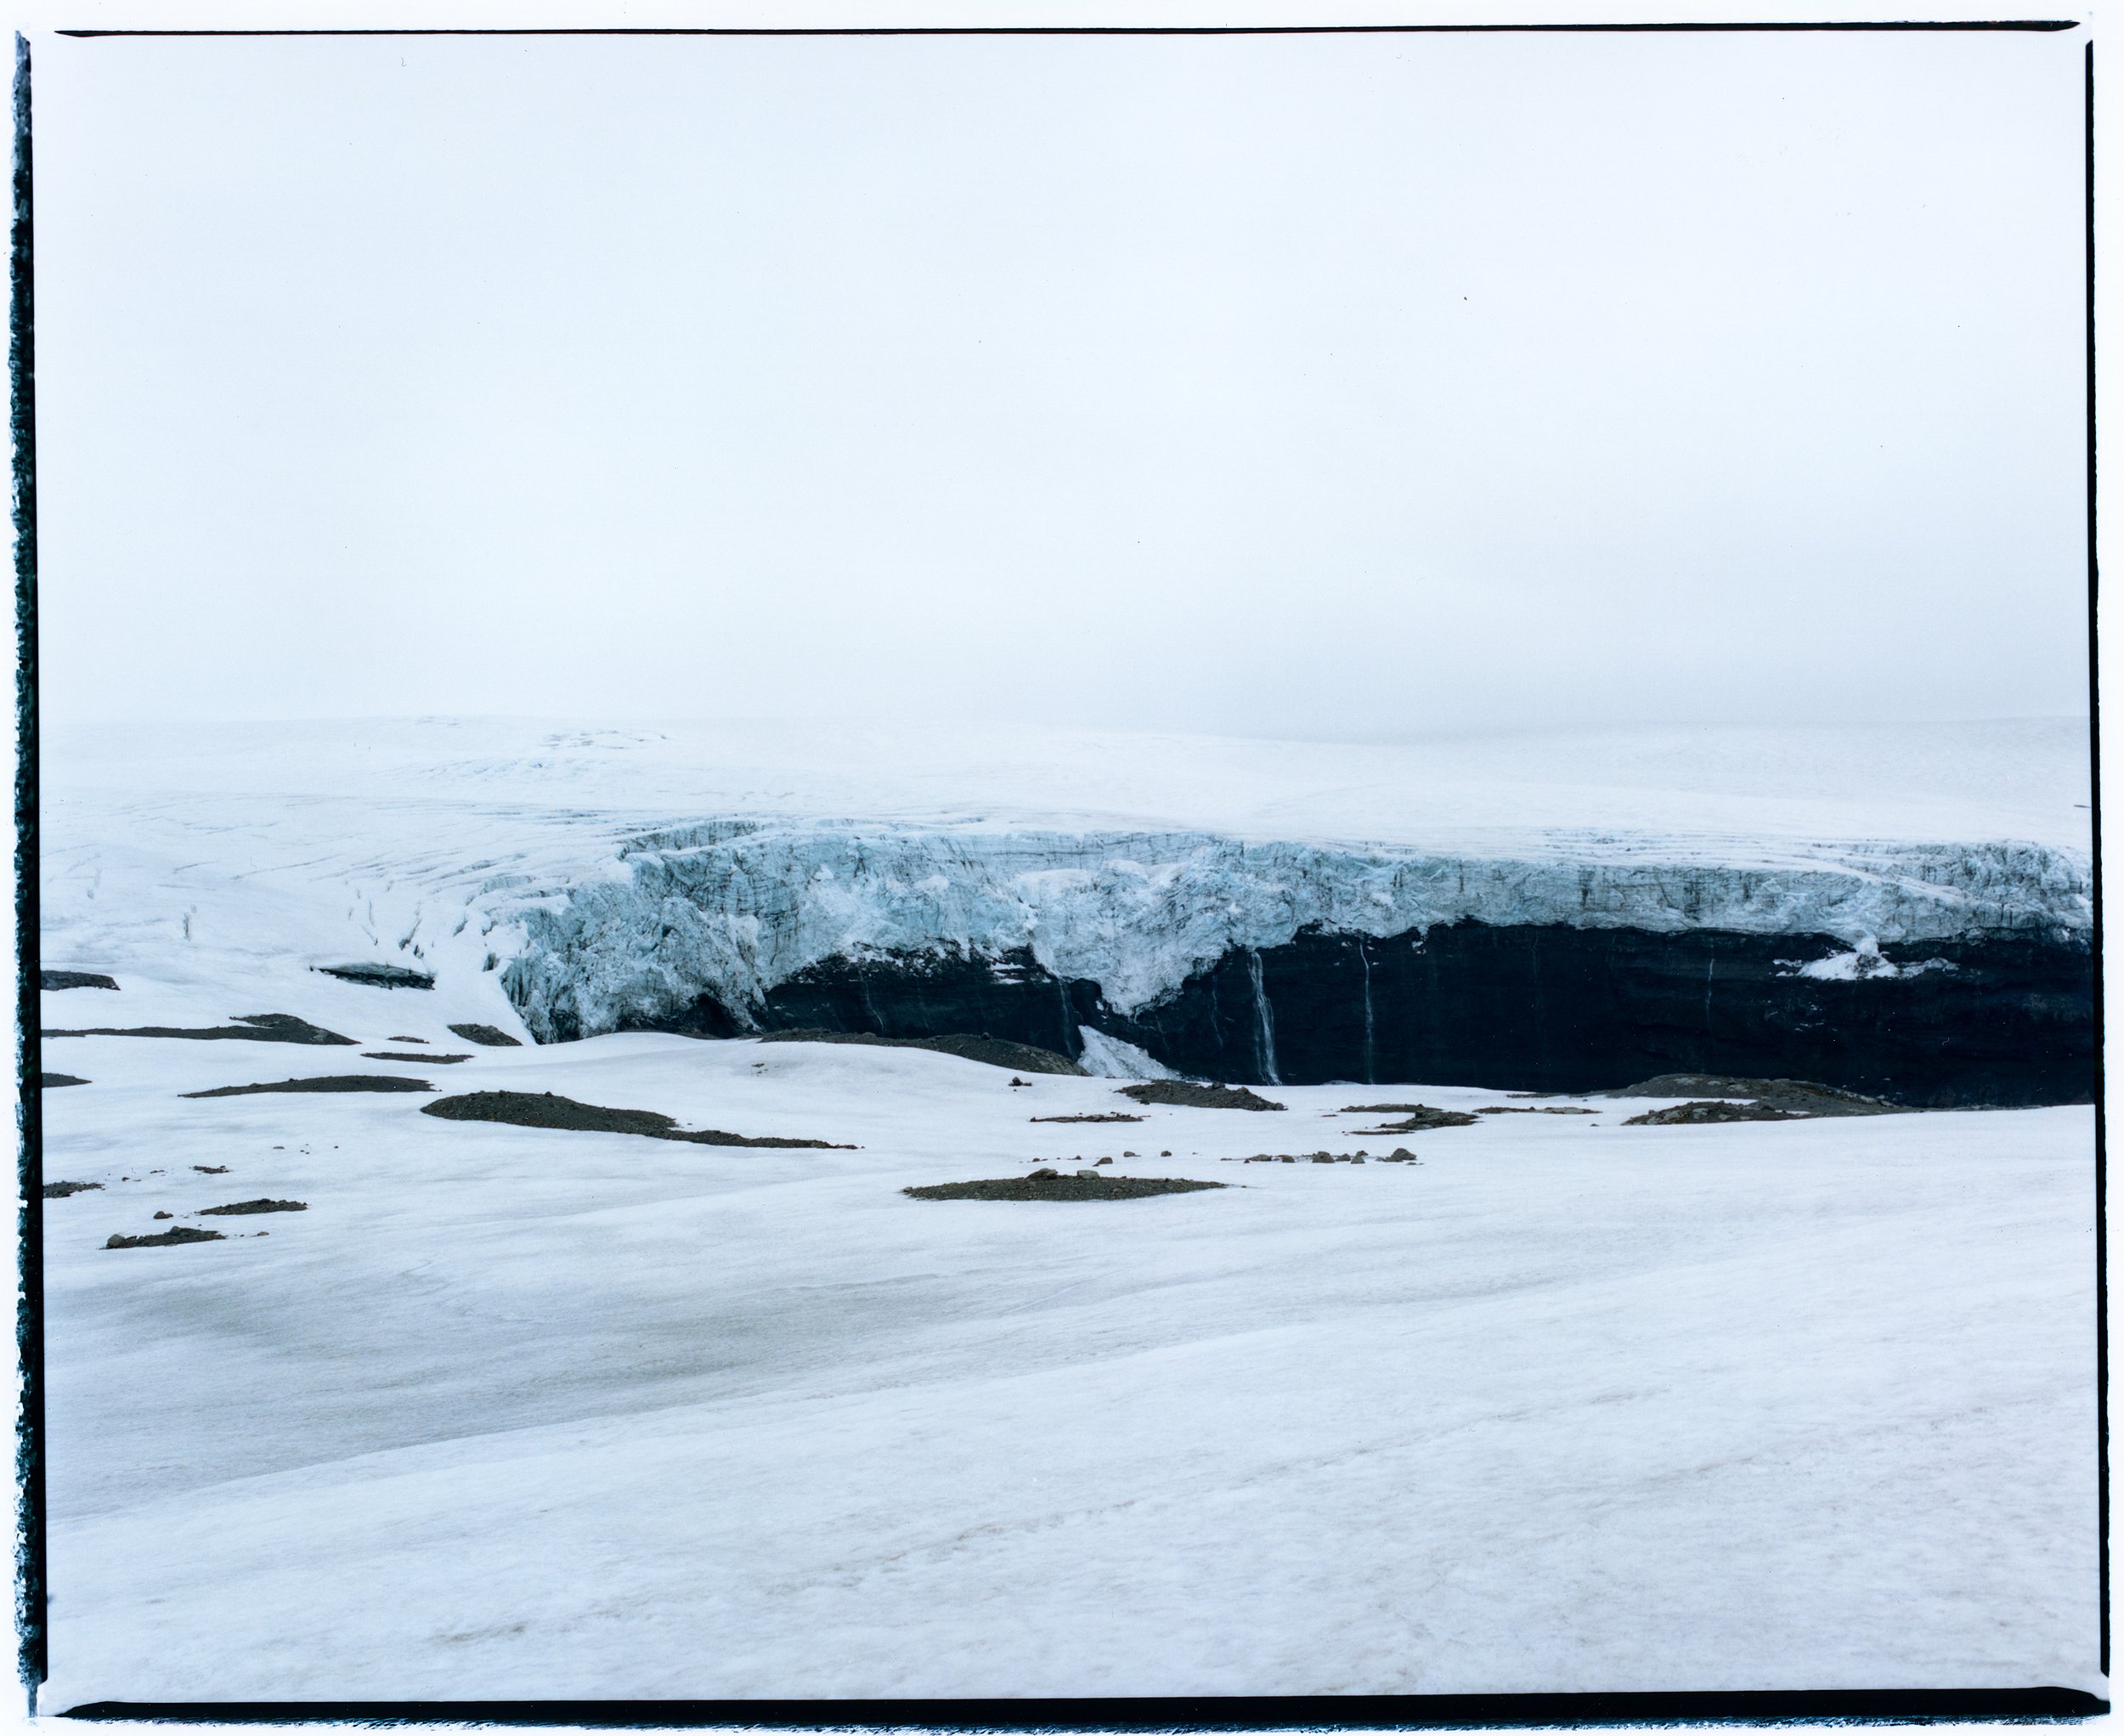 Mýrdalsjökull Glacier